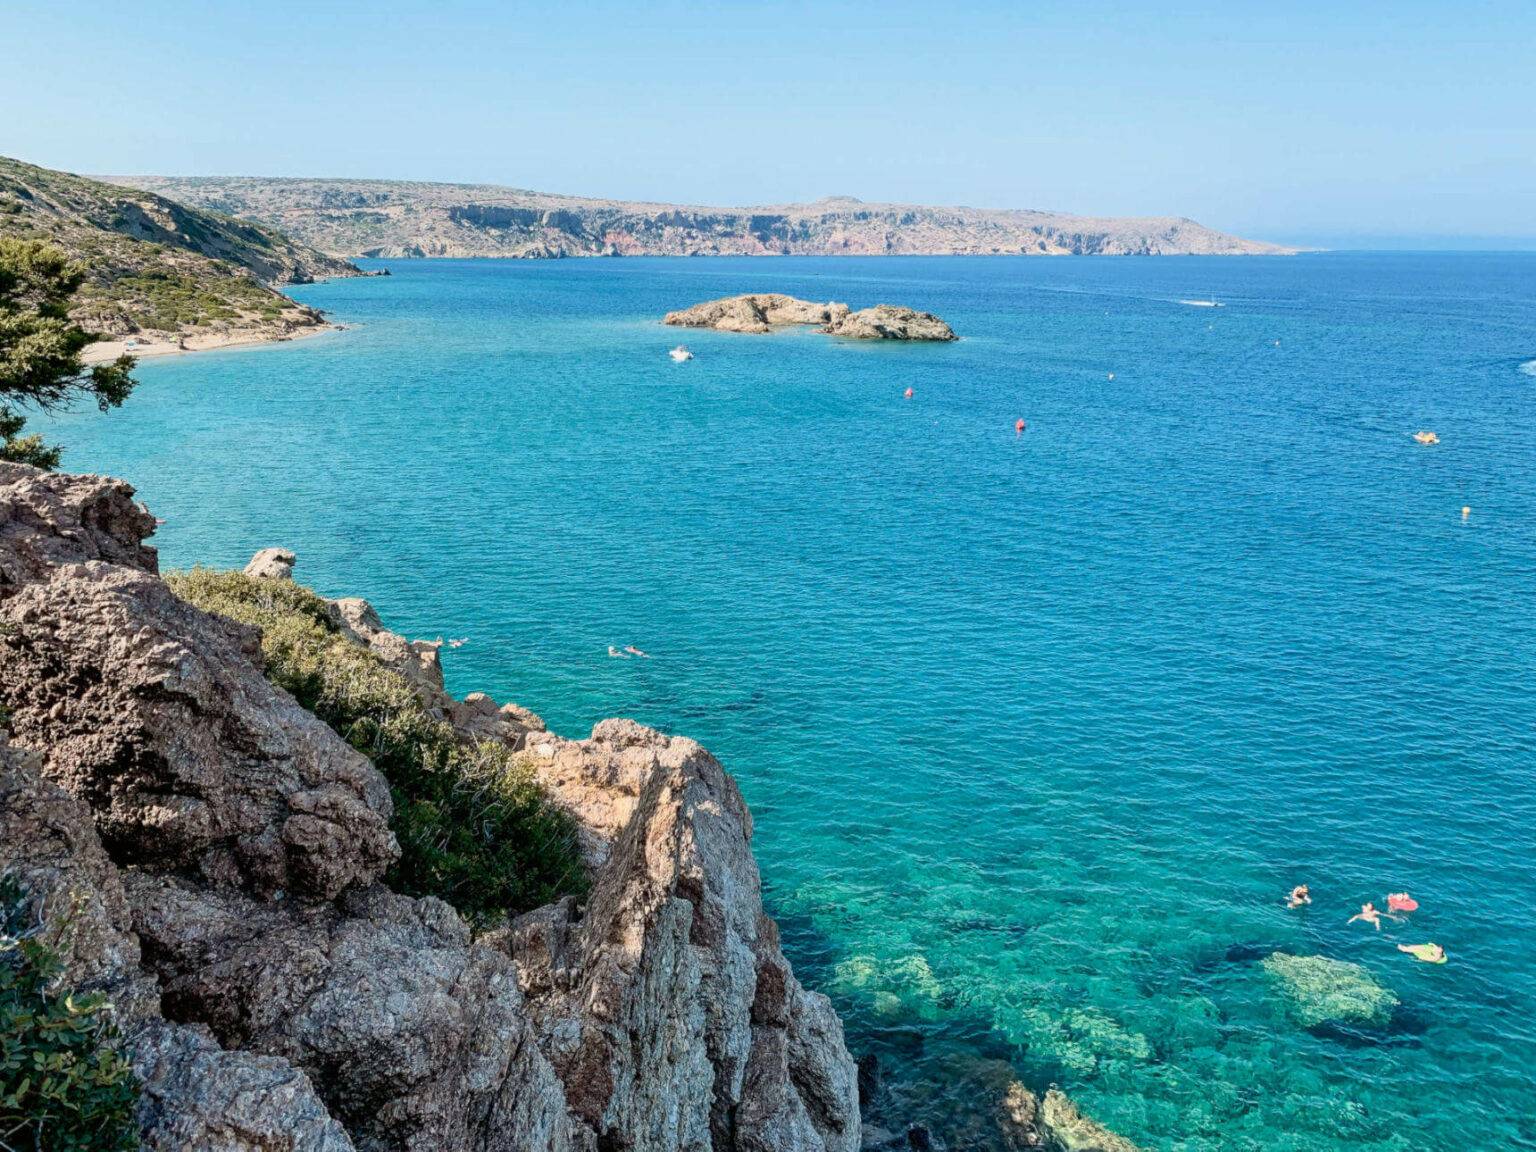 Kristallklares Wasser und Karibikstrände - Kreta ist ein Inseltraum. 